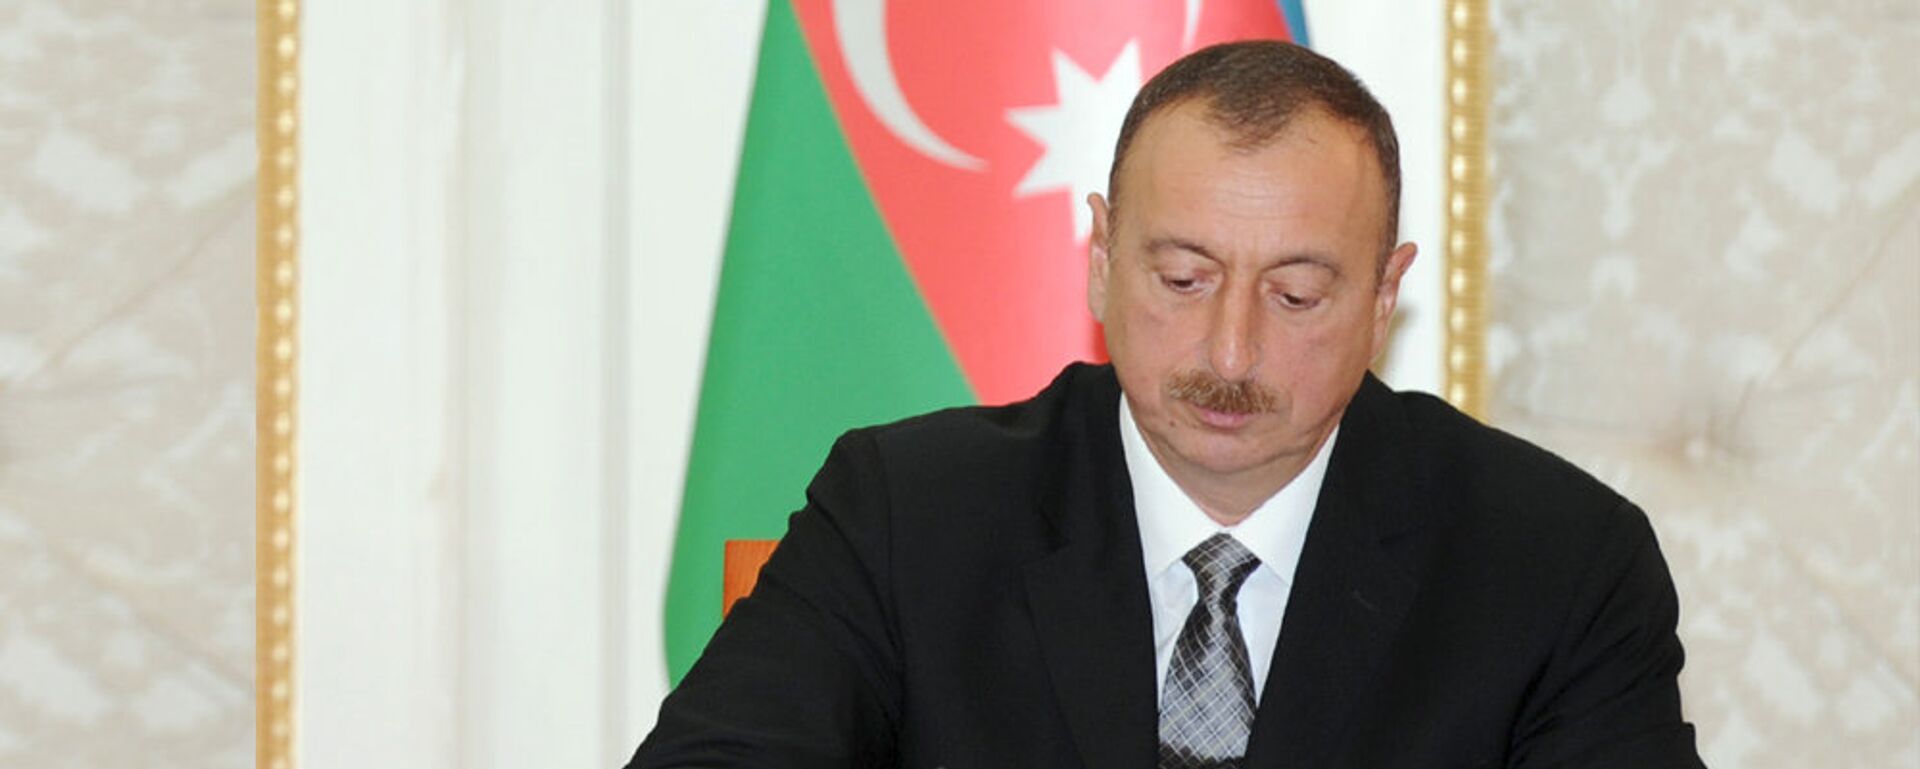 Президент Азербайджана Ильхам Алиев - Sputnik Азербайджан, 1920, 17.03.2021